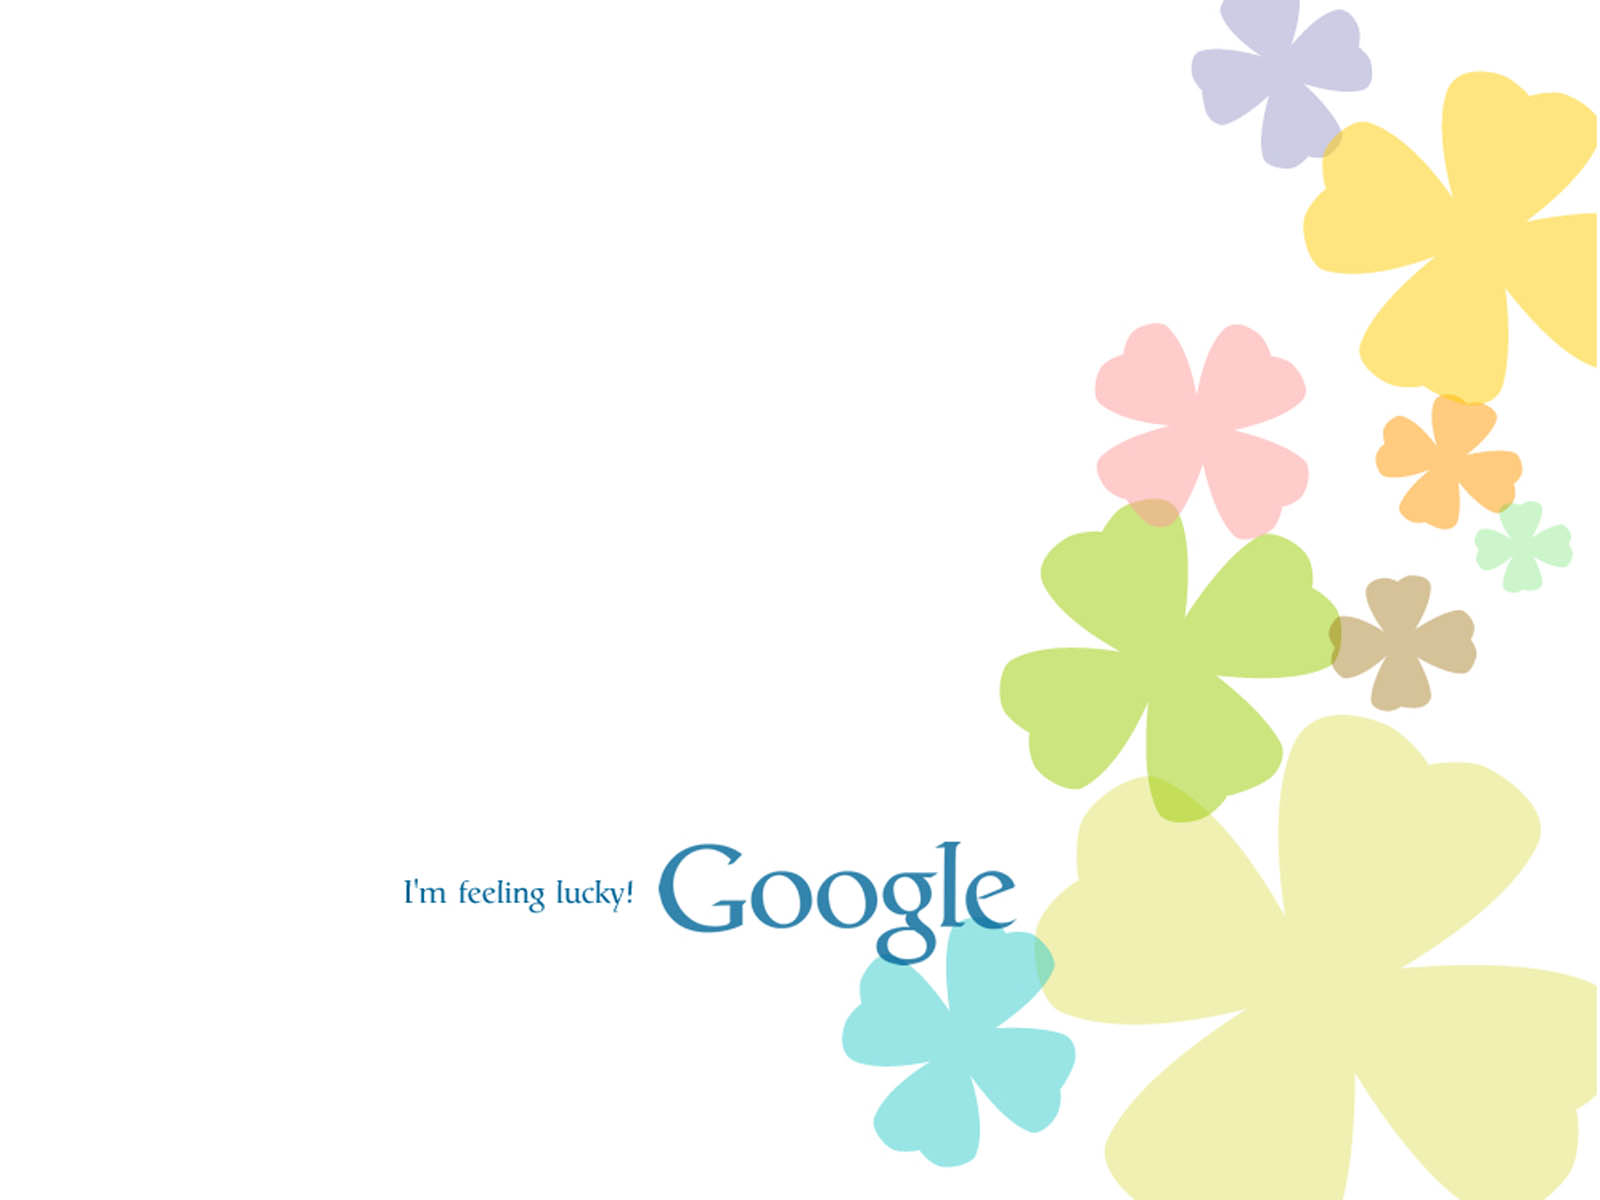 google wallpapers google desktop wallpapers google desktop backgrounds 1600x1200